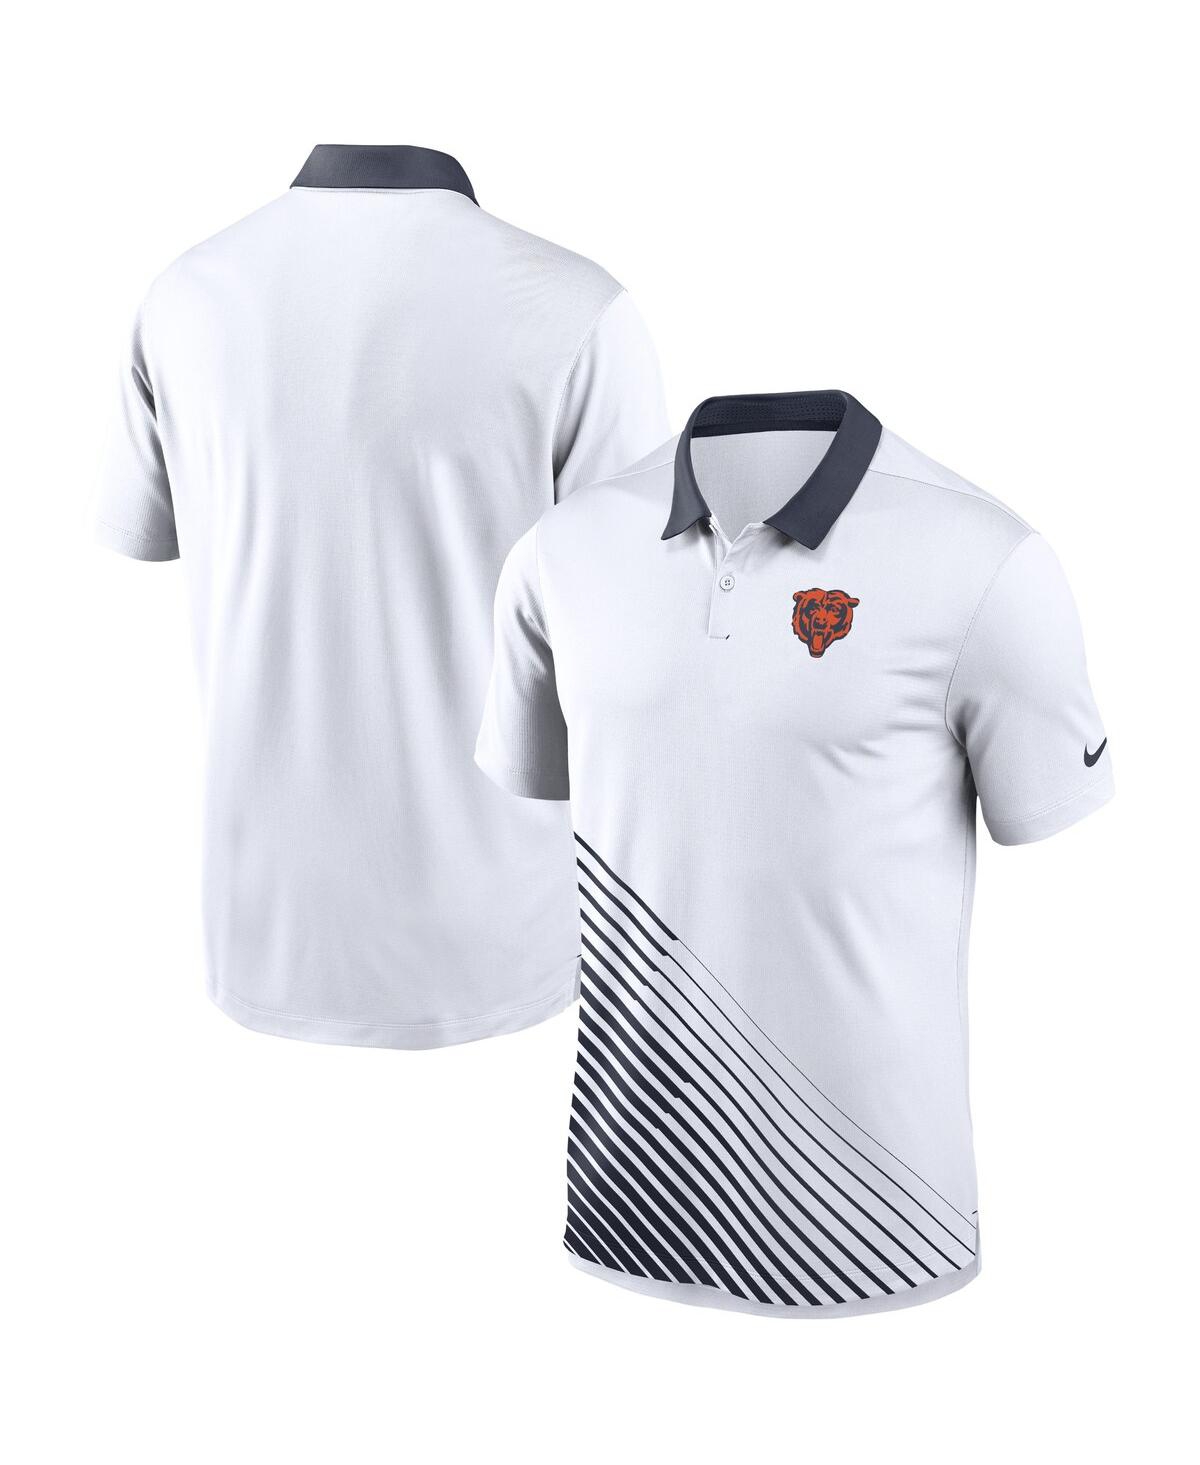 Men's Nike White Chicago Bears Vapor Performance Polo Shirt - White